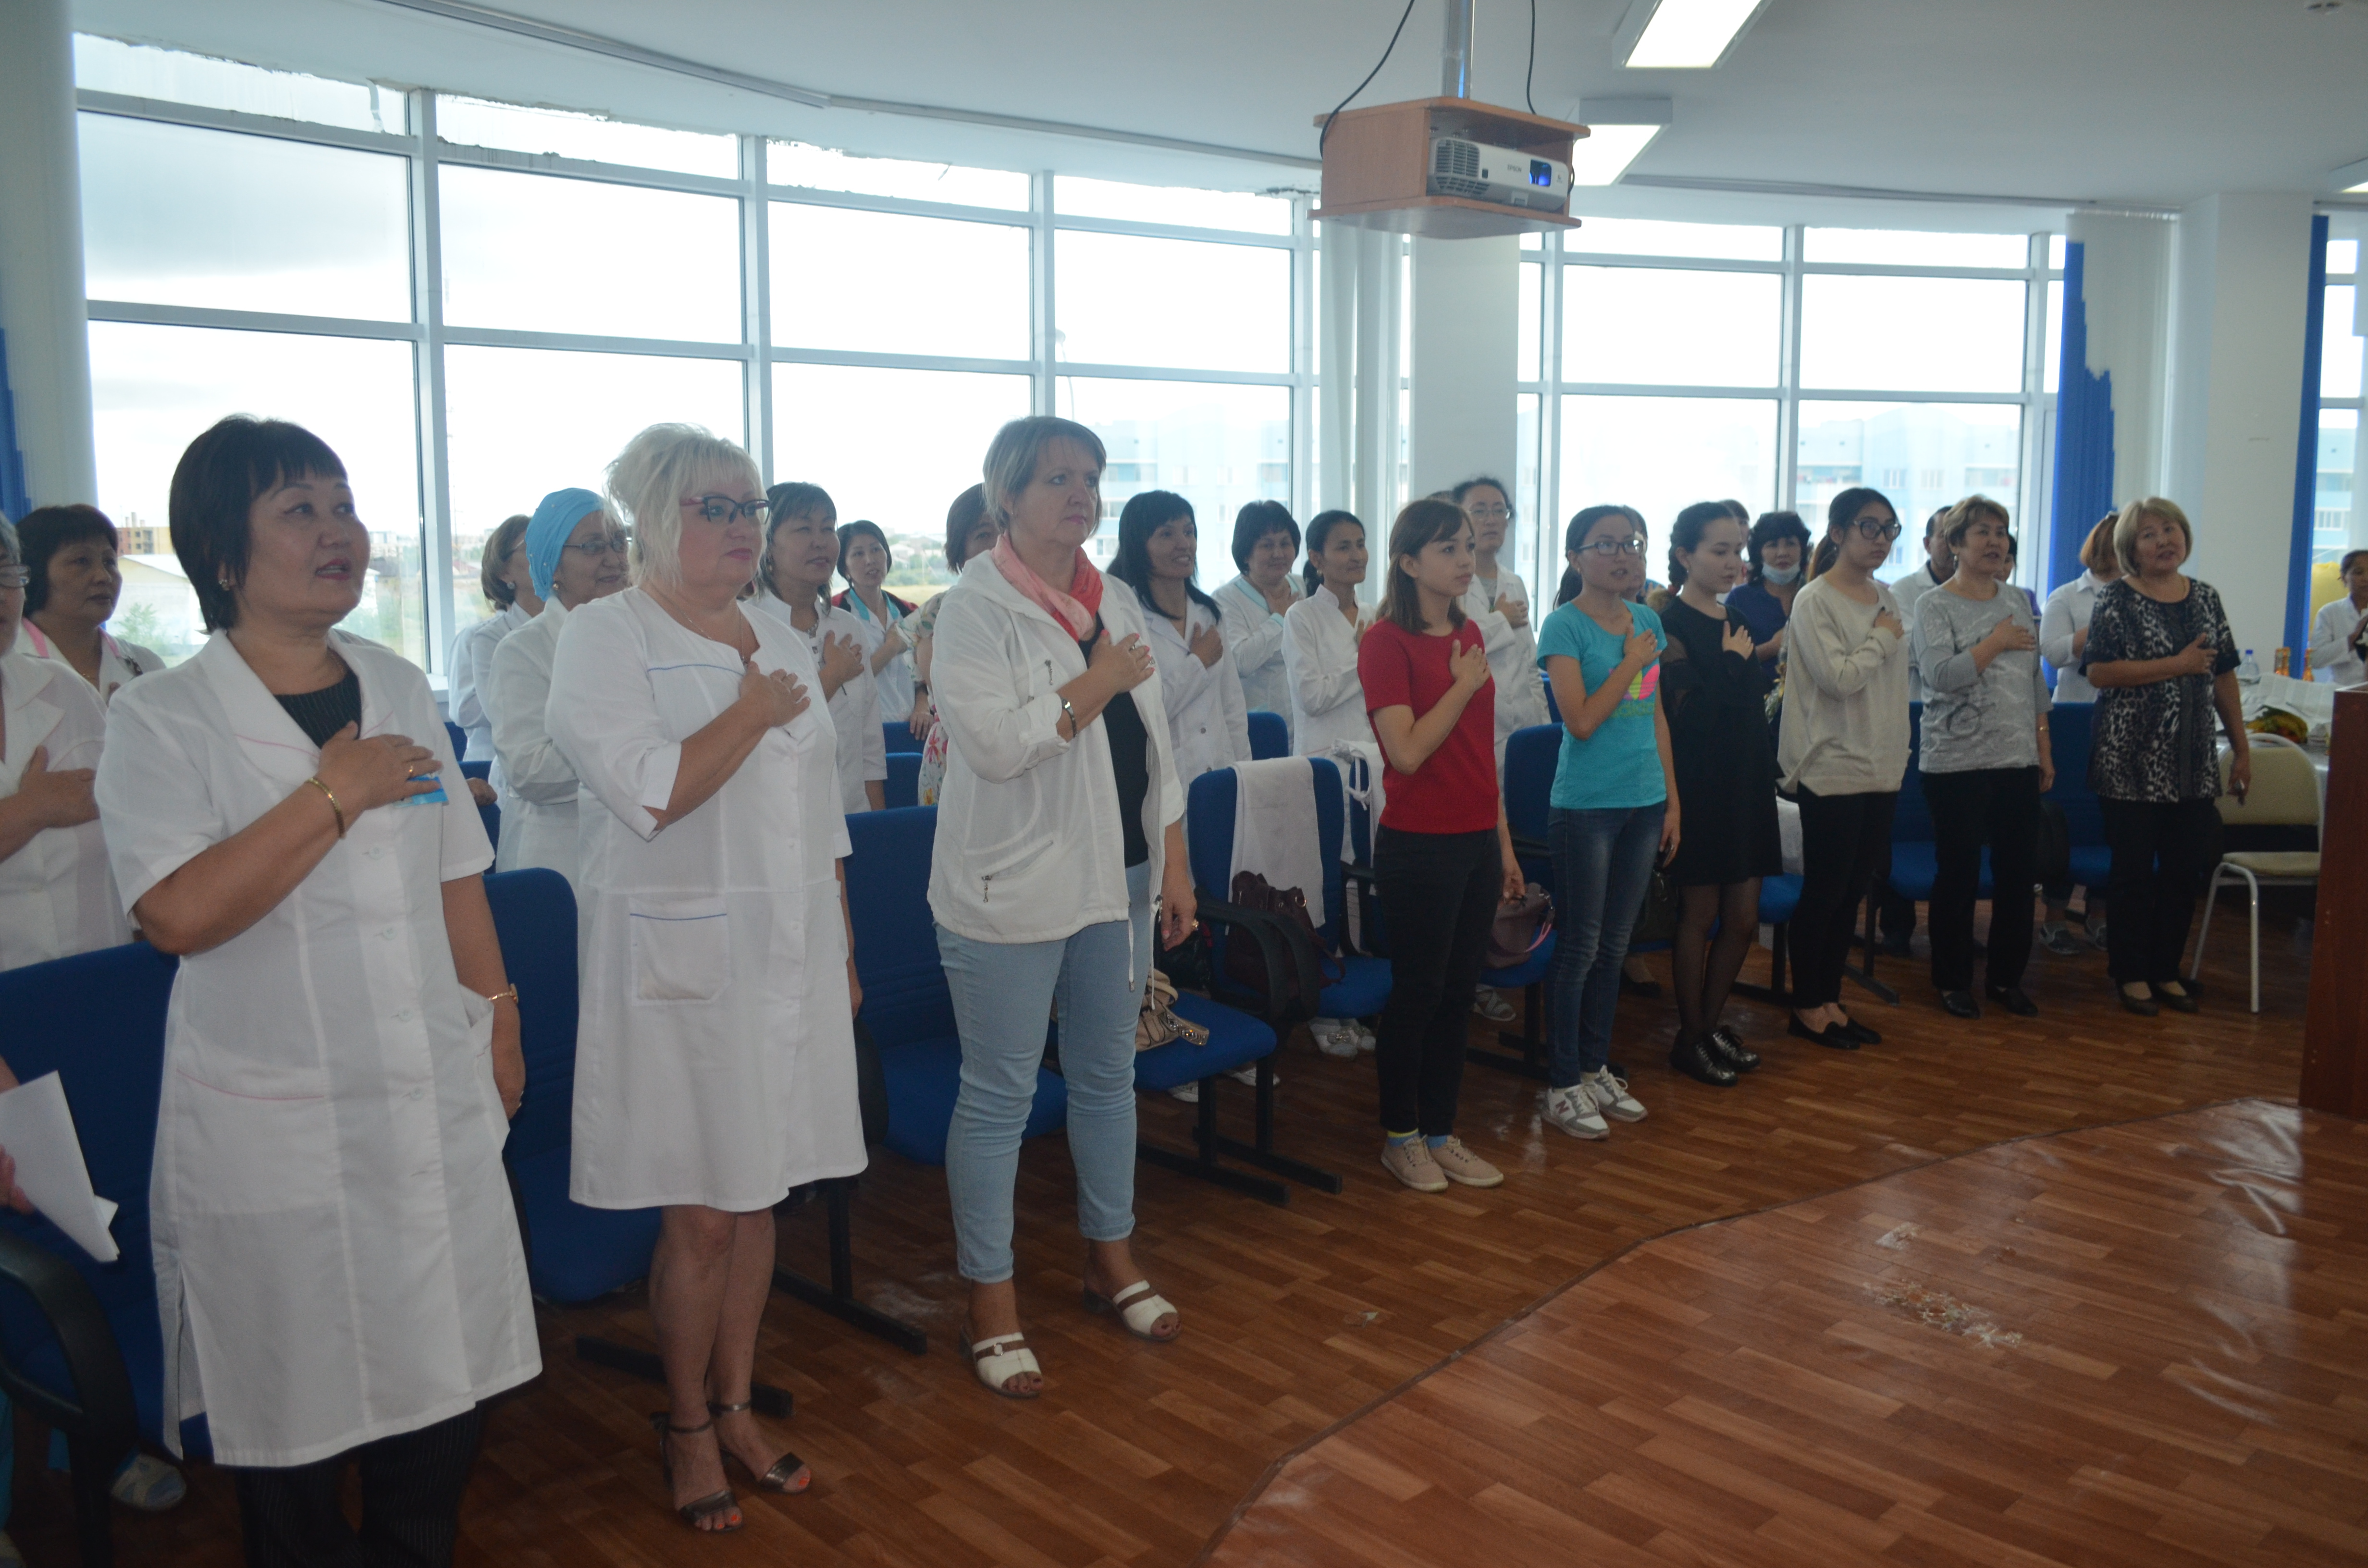  В поликлинике состоялось торжественное собрание посвященное ко дню Конституции Республики Казахстан. 